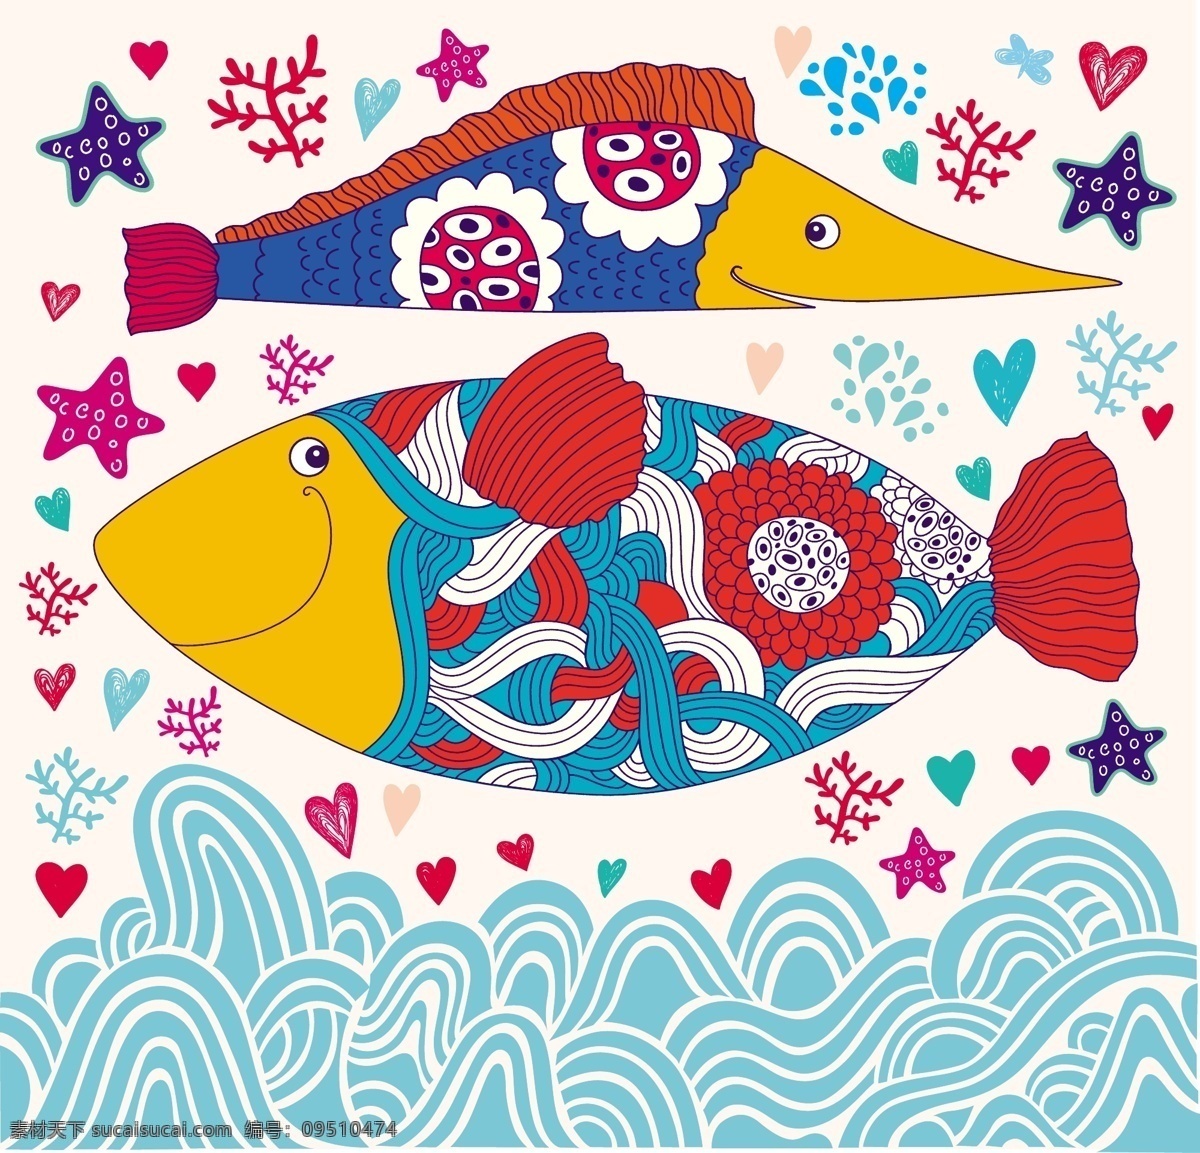 卡通 海洋生物 壁纸 波纹 卡通鱼卡通鱼 海星 海洋 手绘 儿童插画 儿童画 墙纸 插画 鲸鱼 卡通动物 卡通设计